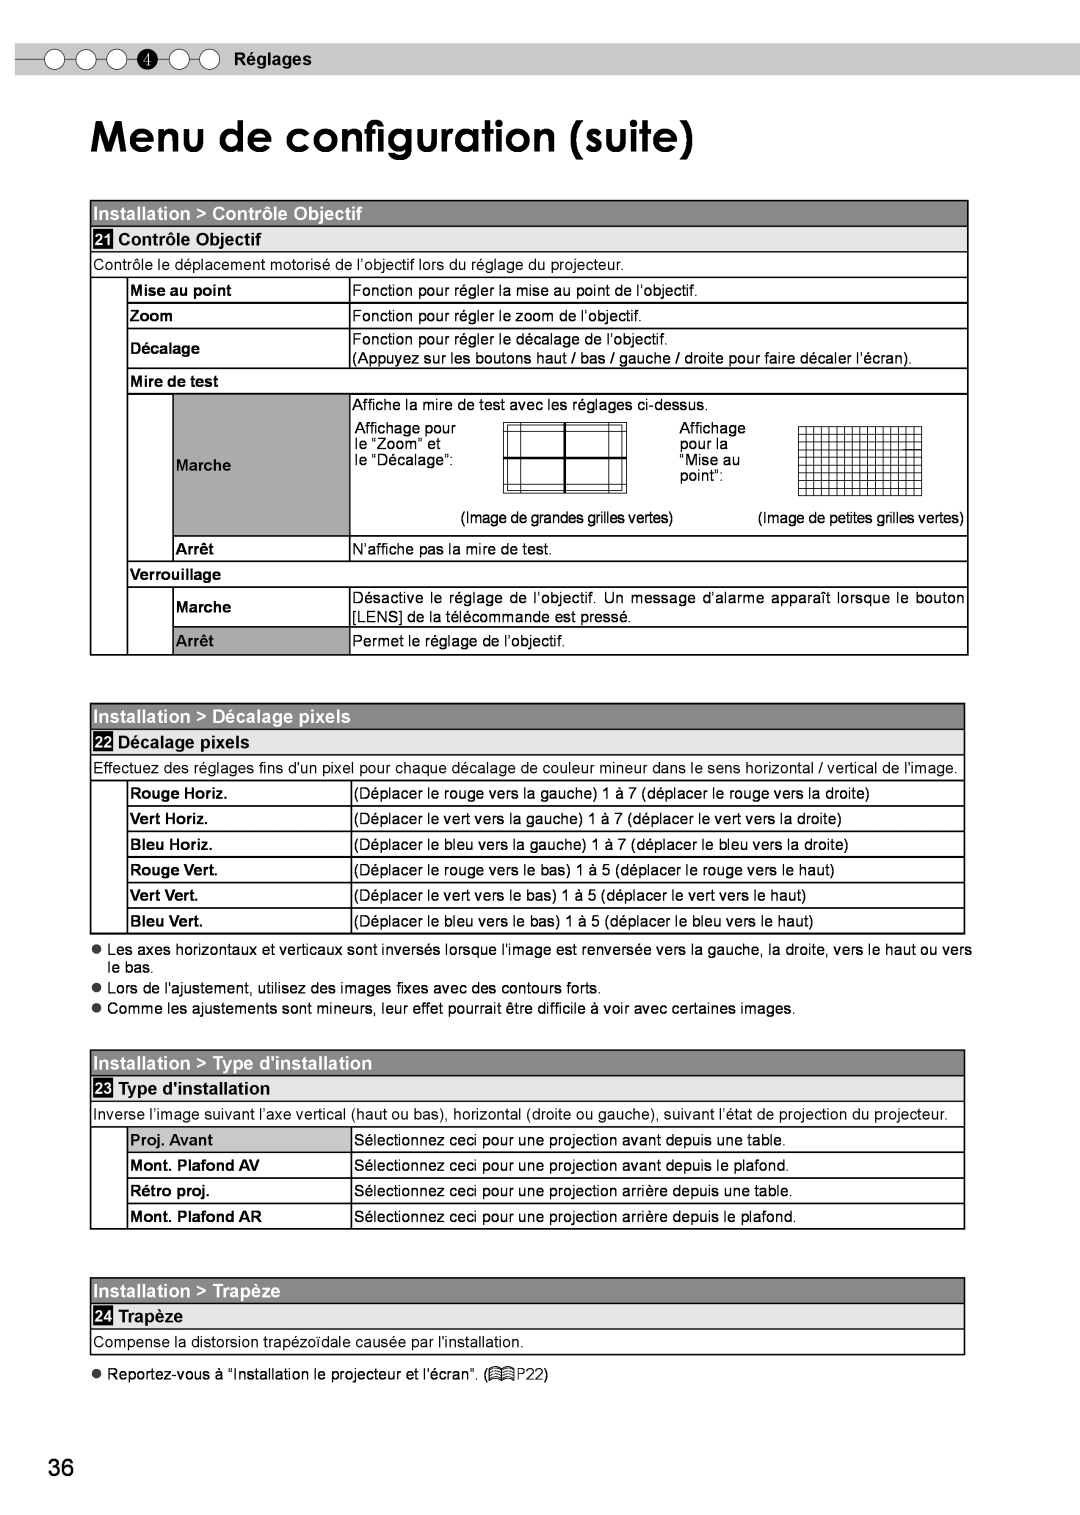 JVC DLA-HD350 manual Menu de configuration suite, Installation Contrôle Objectif, Installation Décalage pixels, 4 Réglages 